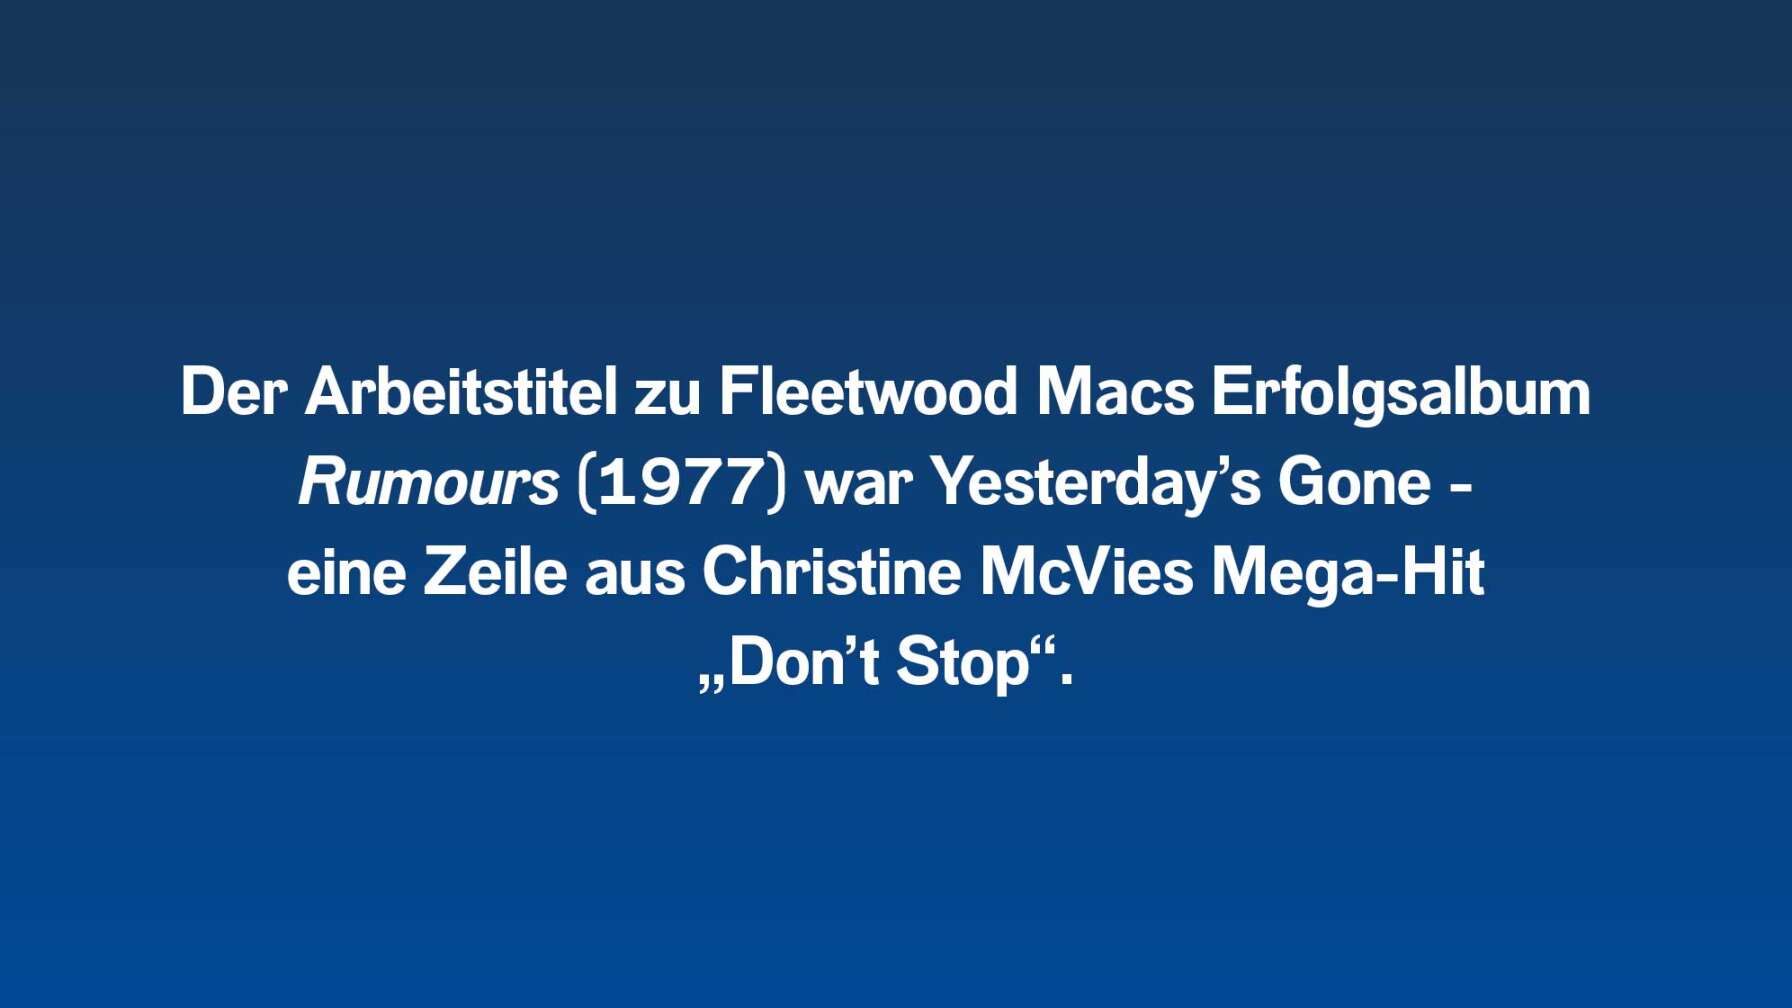 Der Arbeitstitel zu Fleetwood Macs Erfolgsalbum Rumours (1977) war Yesterday’s Gone – eine Zeile aus Christine McVies Mega-Hit „Don’t Stop“.